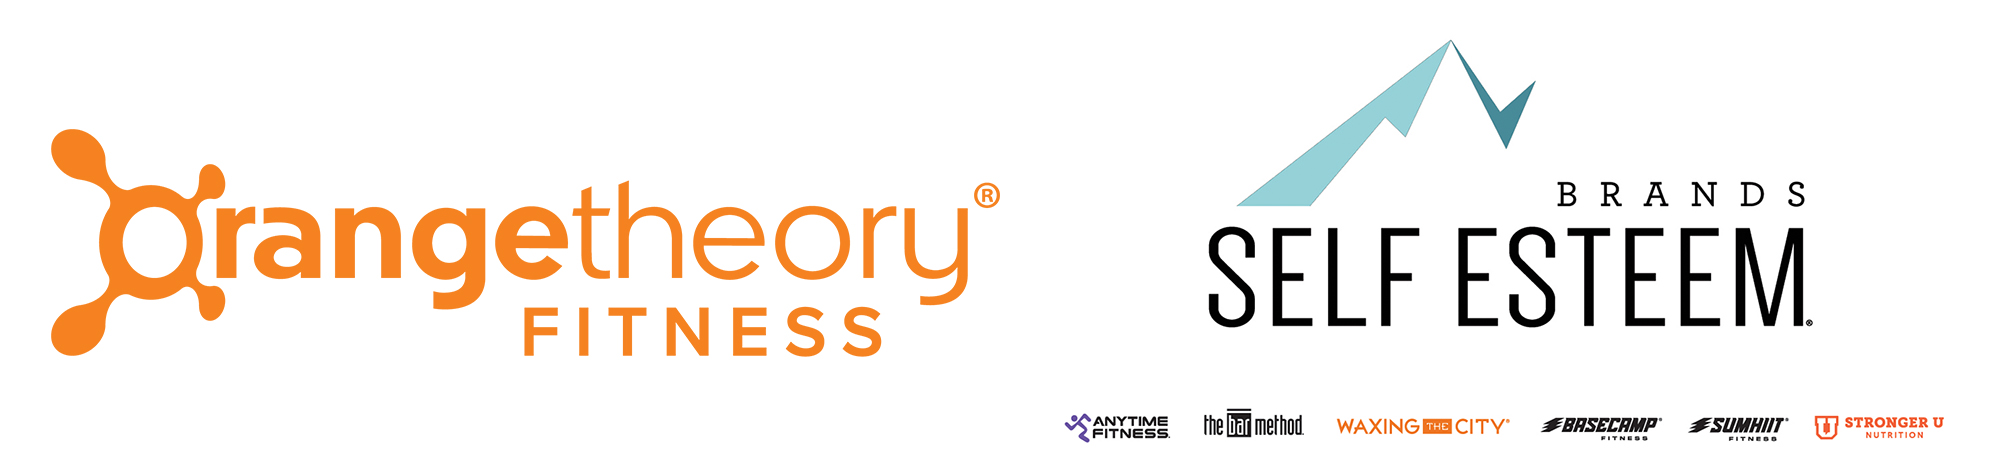 Self Esteem Brands, matriz de Anytime Fitness, y Orangetheory anuncian su proyecto de fusionarse en una sola compañía